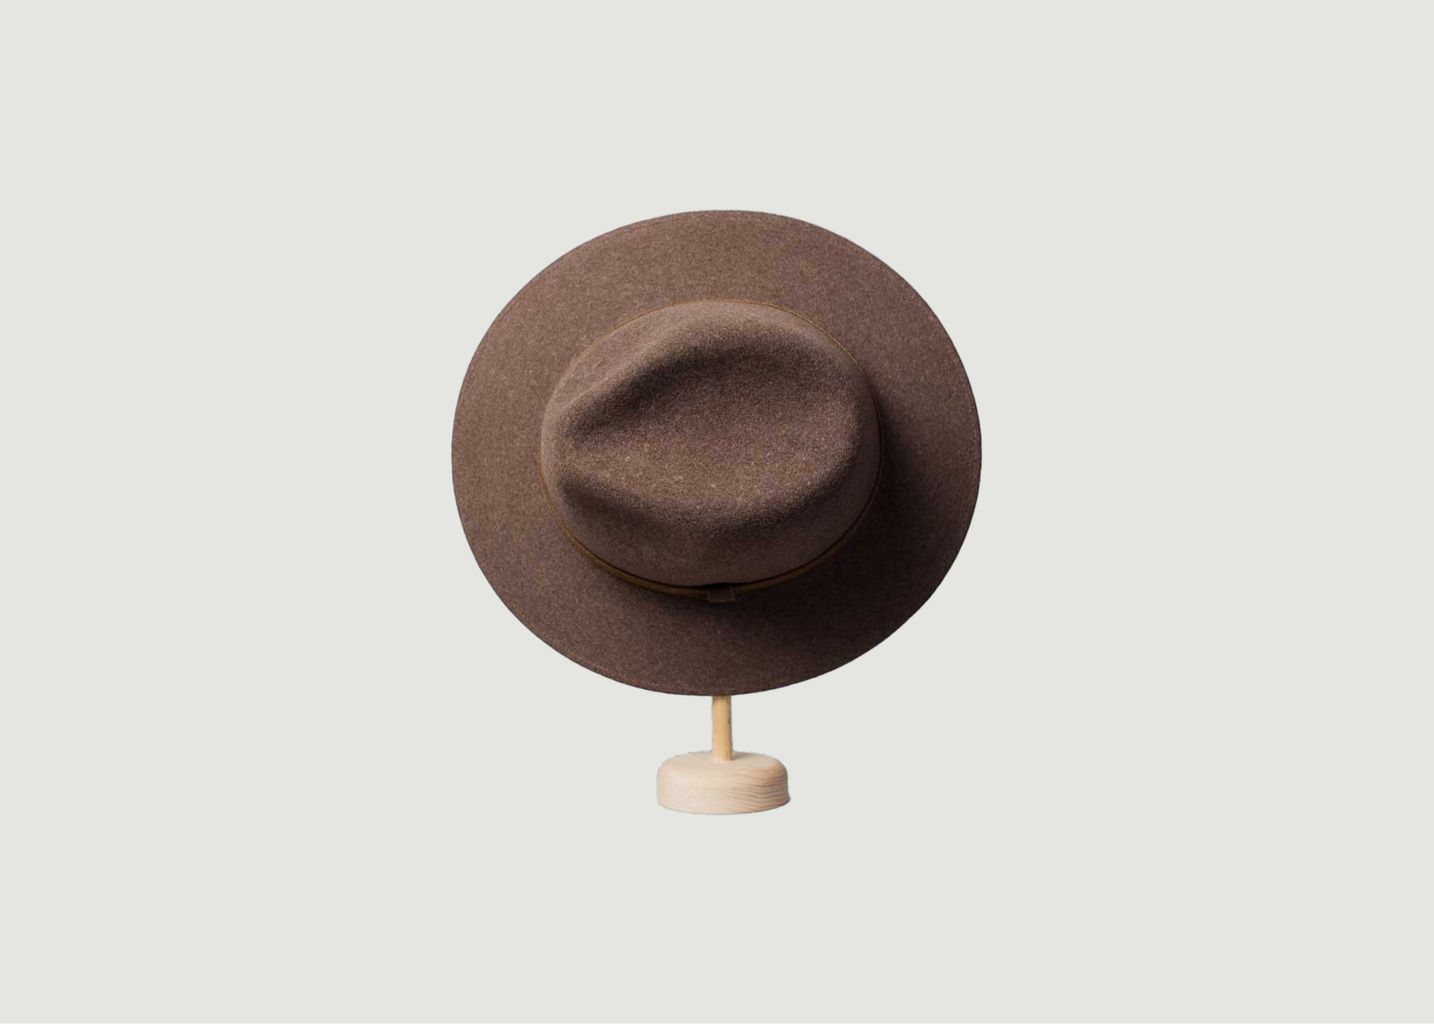 Montreal hat - Courtois Paris